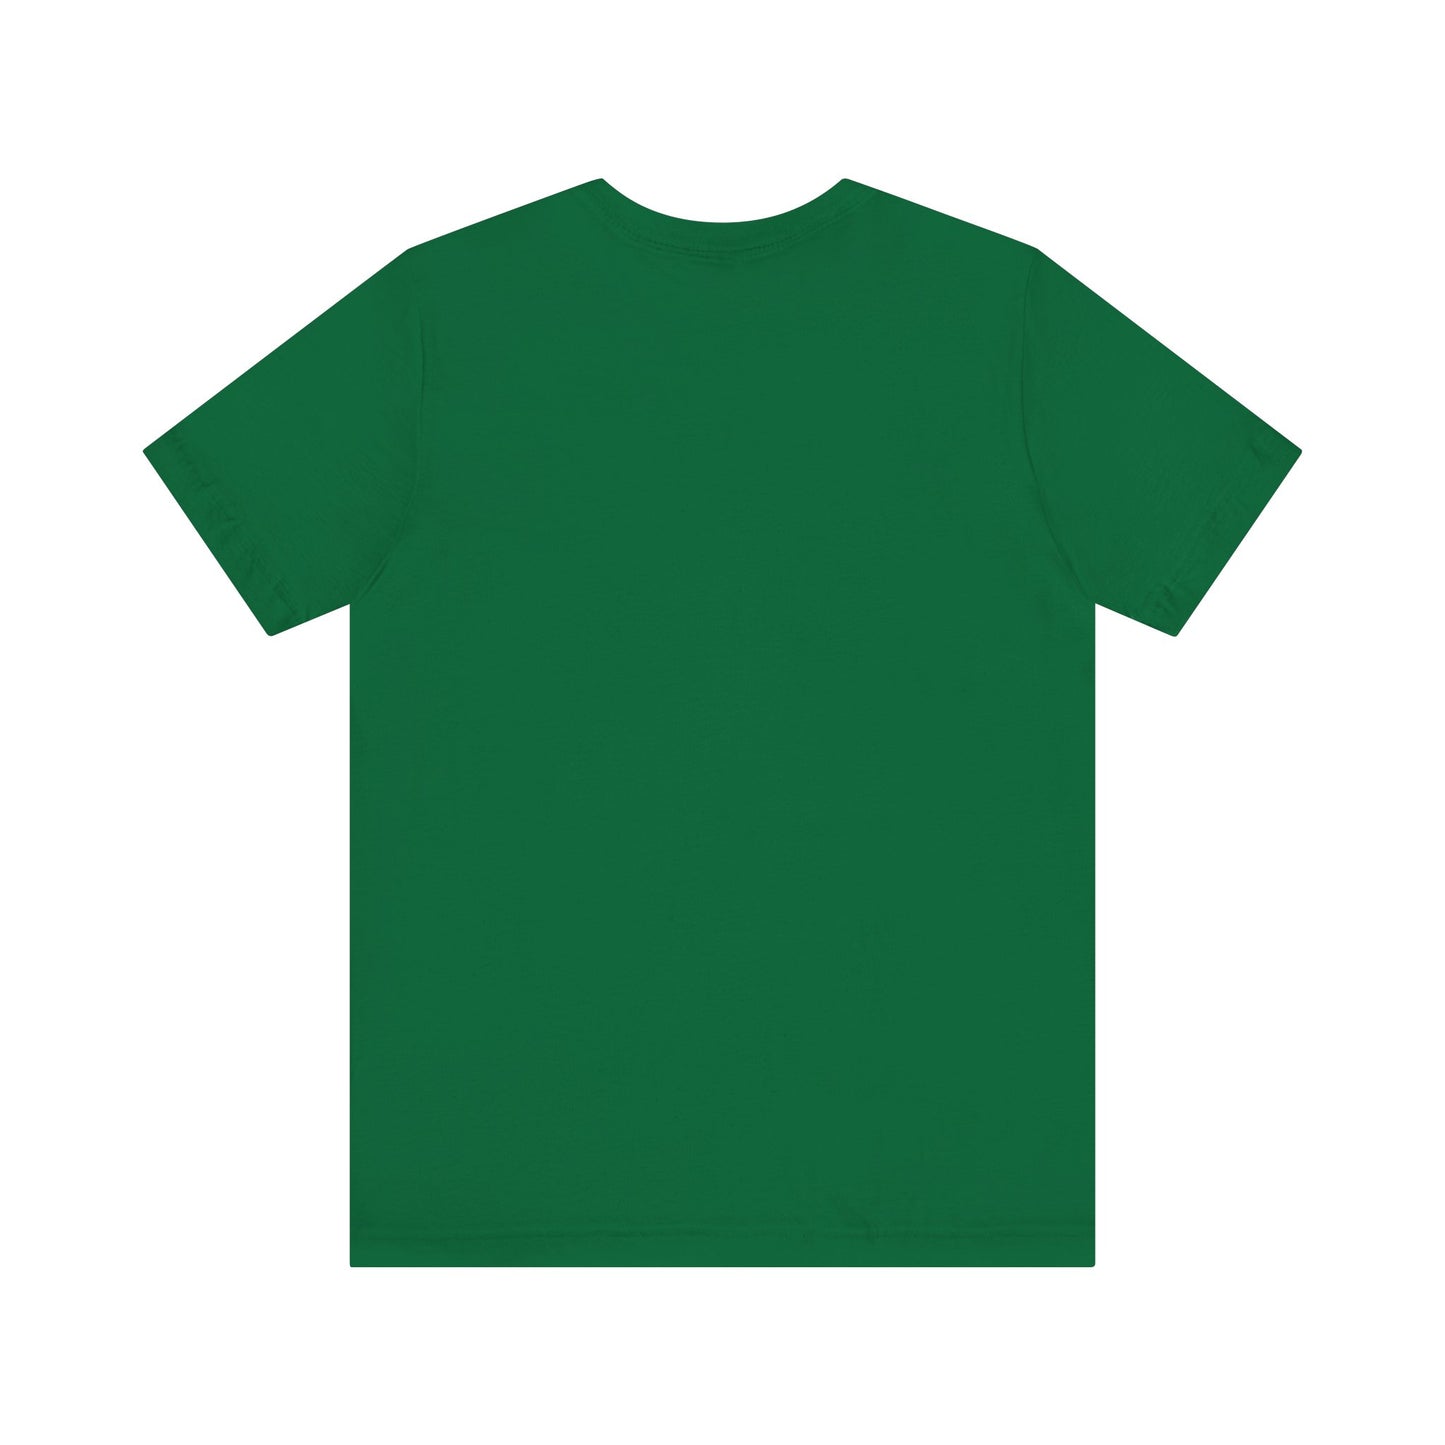 Green - Unisex Jersey Short Sleeve T Shirt - Green Royal T